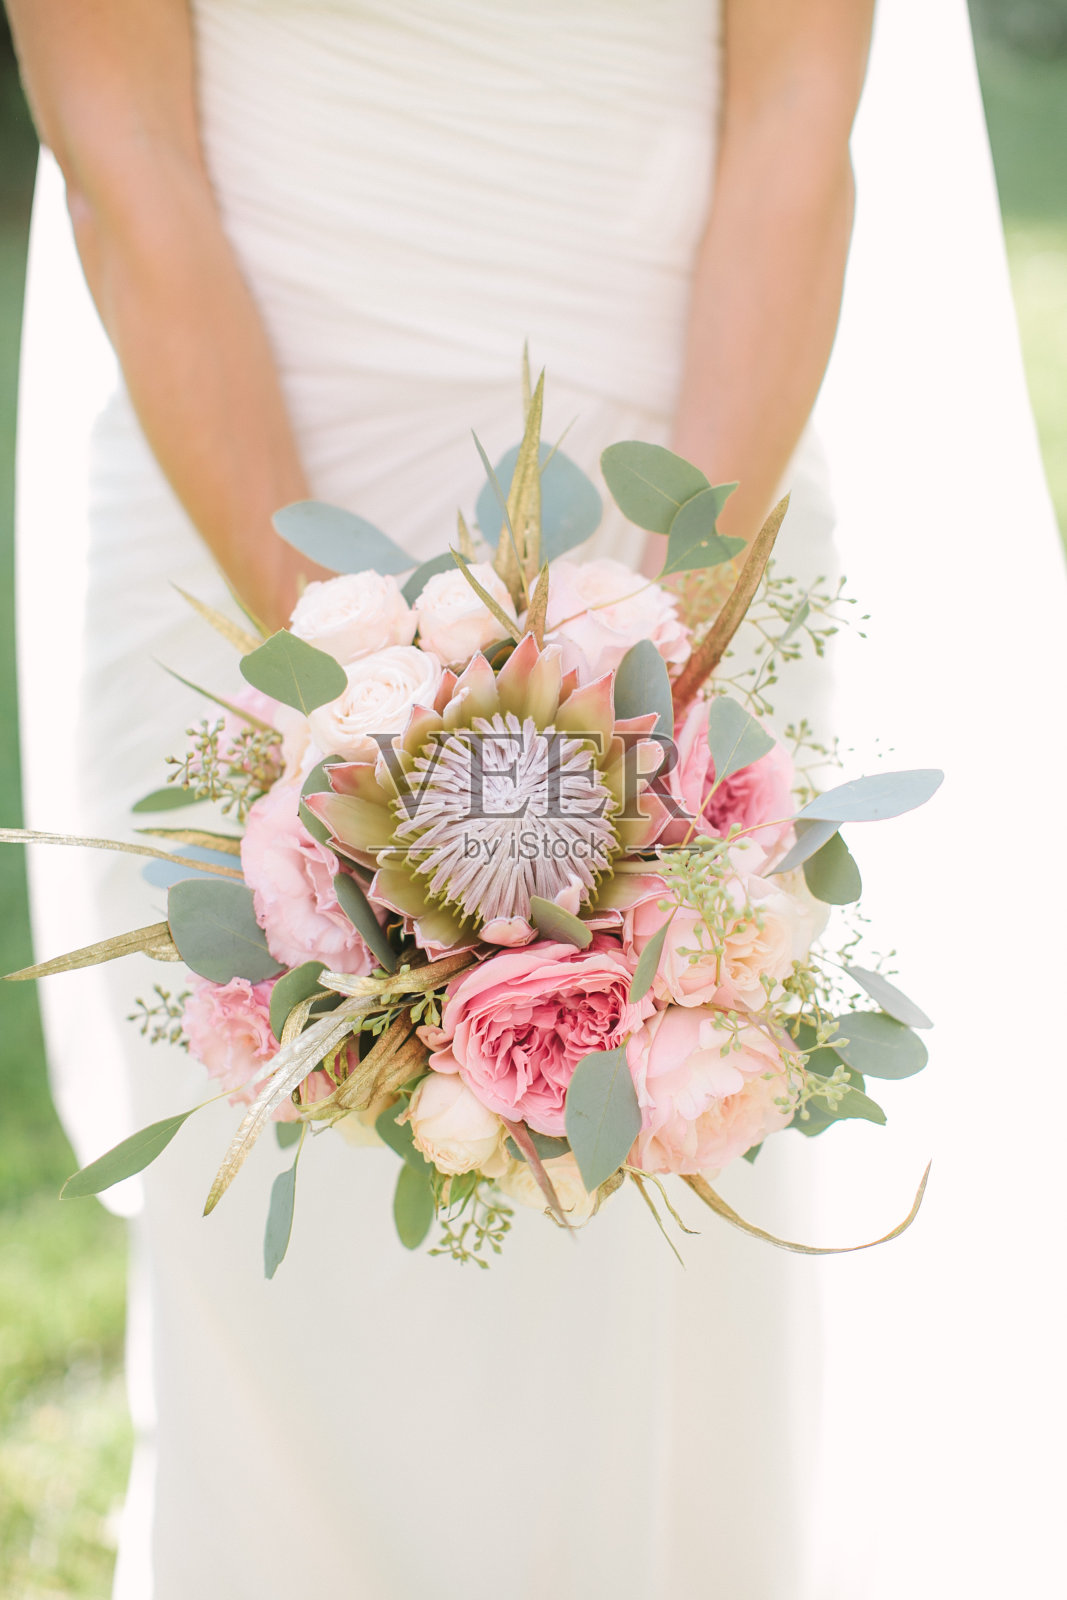 优雅的新娘身穿白色婚纱，手拿一束粉红色玫瑰、牡丹和桉树制成的婚礼花束照片摄影图片